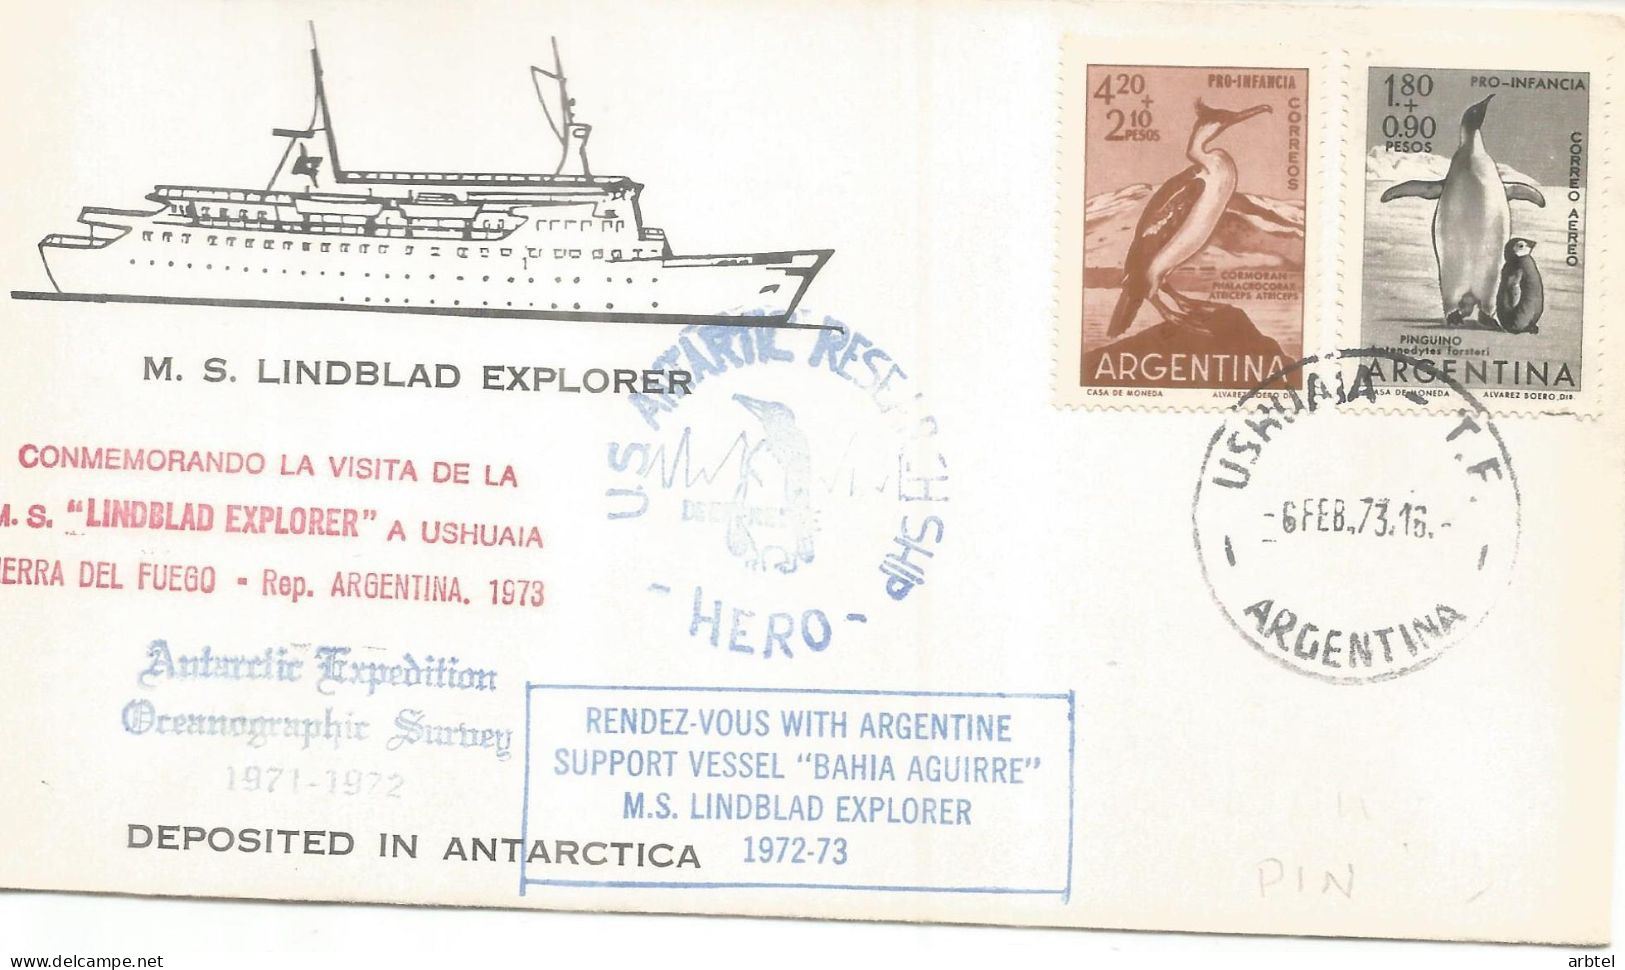 ANTARTICA ANTARCTIC ARGENTINA TURISMO LINDBLAD EXPLORER 1973 - Navires & Brise-glace